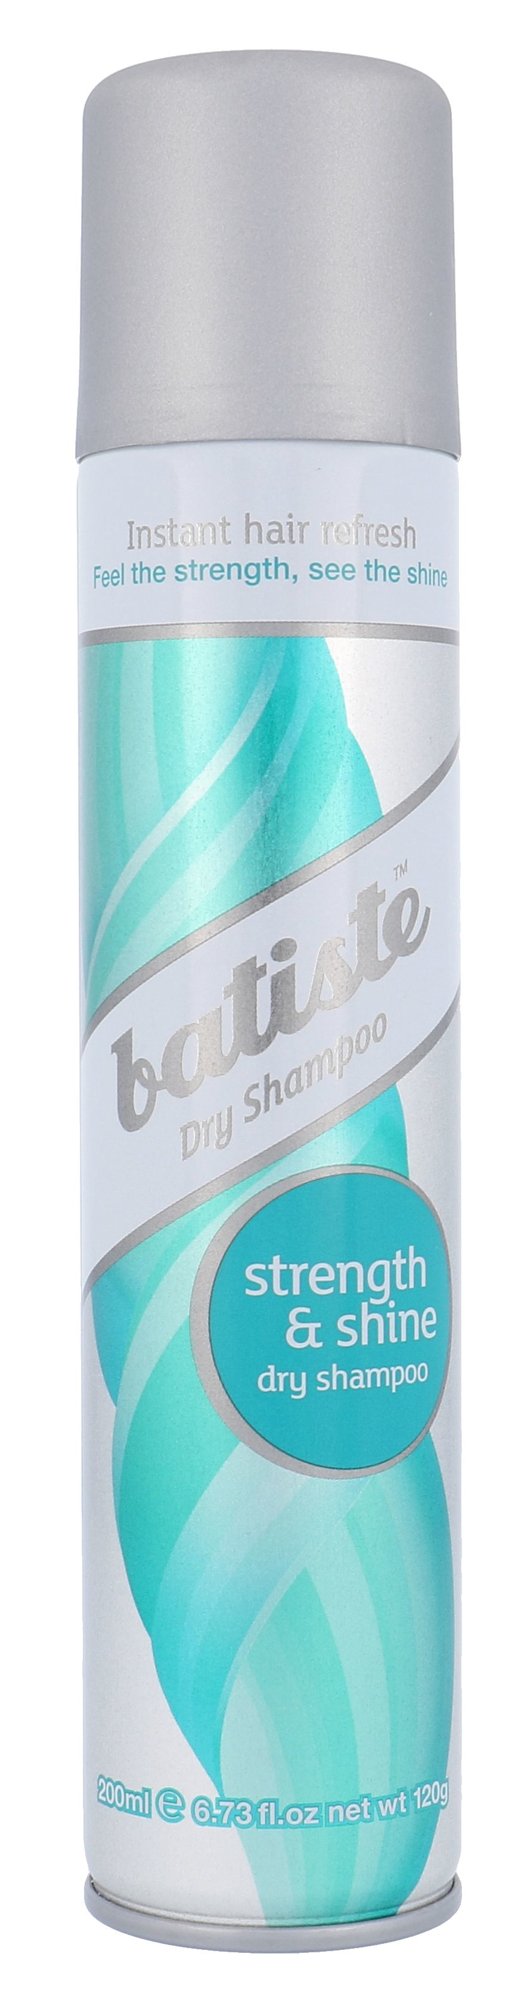 Batiste Dry Shampoo Strength & Shine